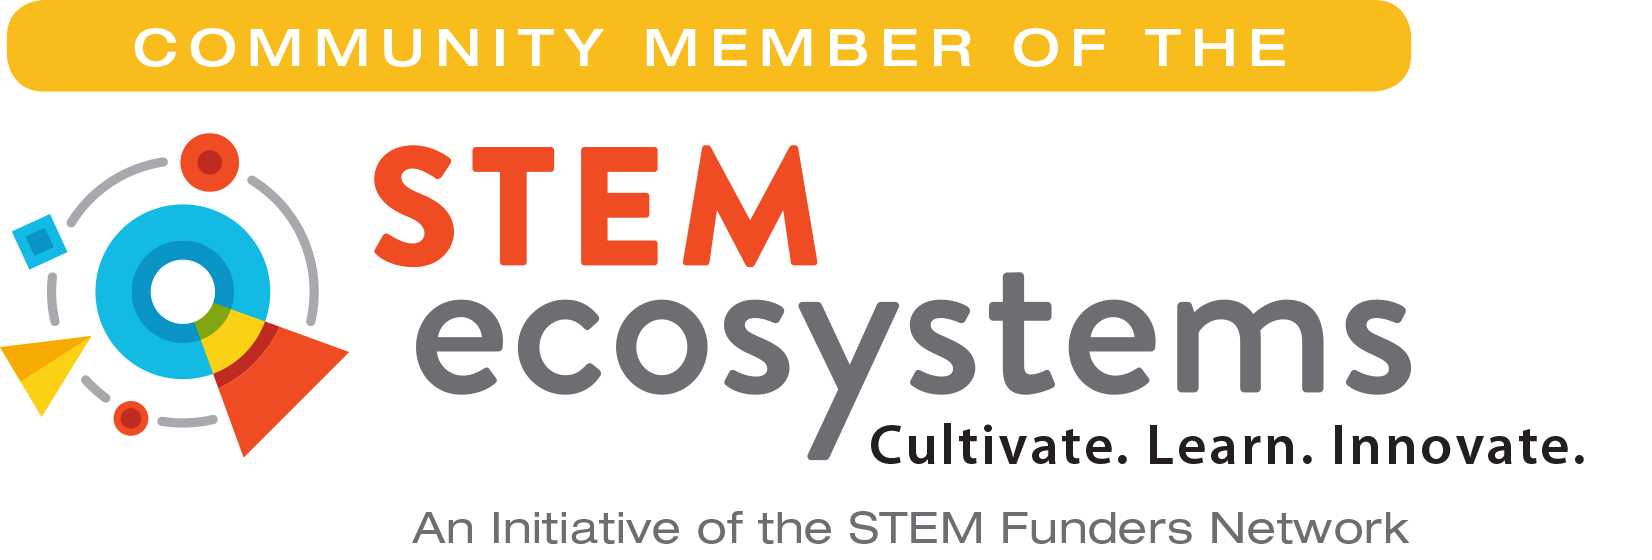 FINAL STEM ecosystem Partner logo.png